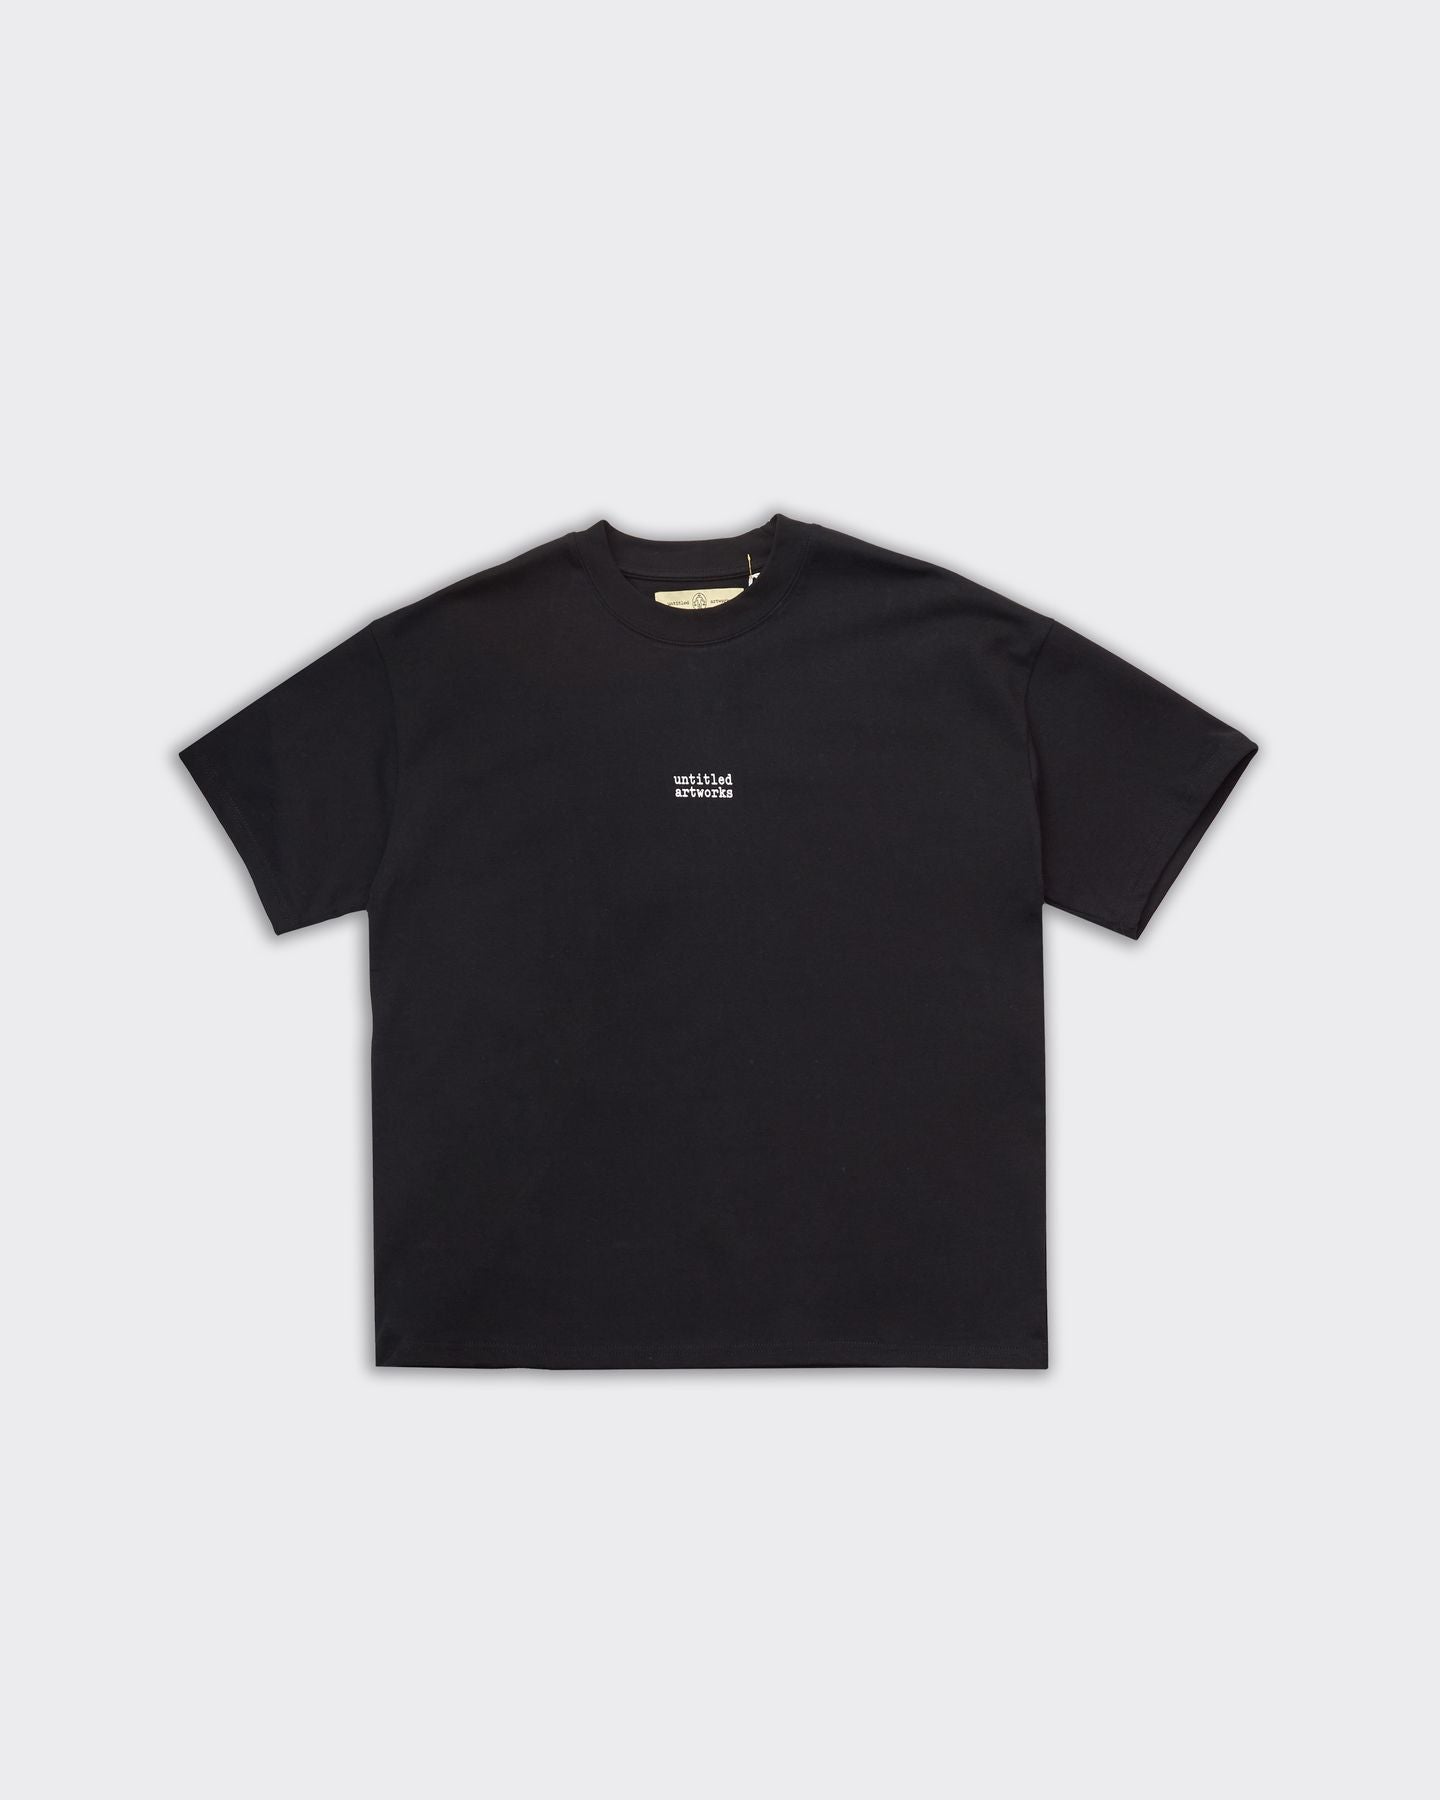 Essential Black T-Shirt